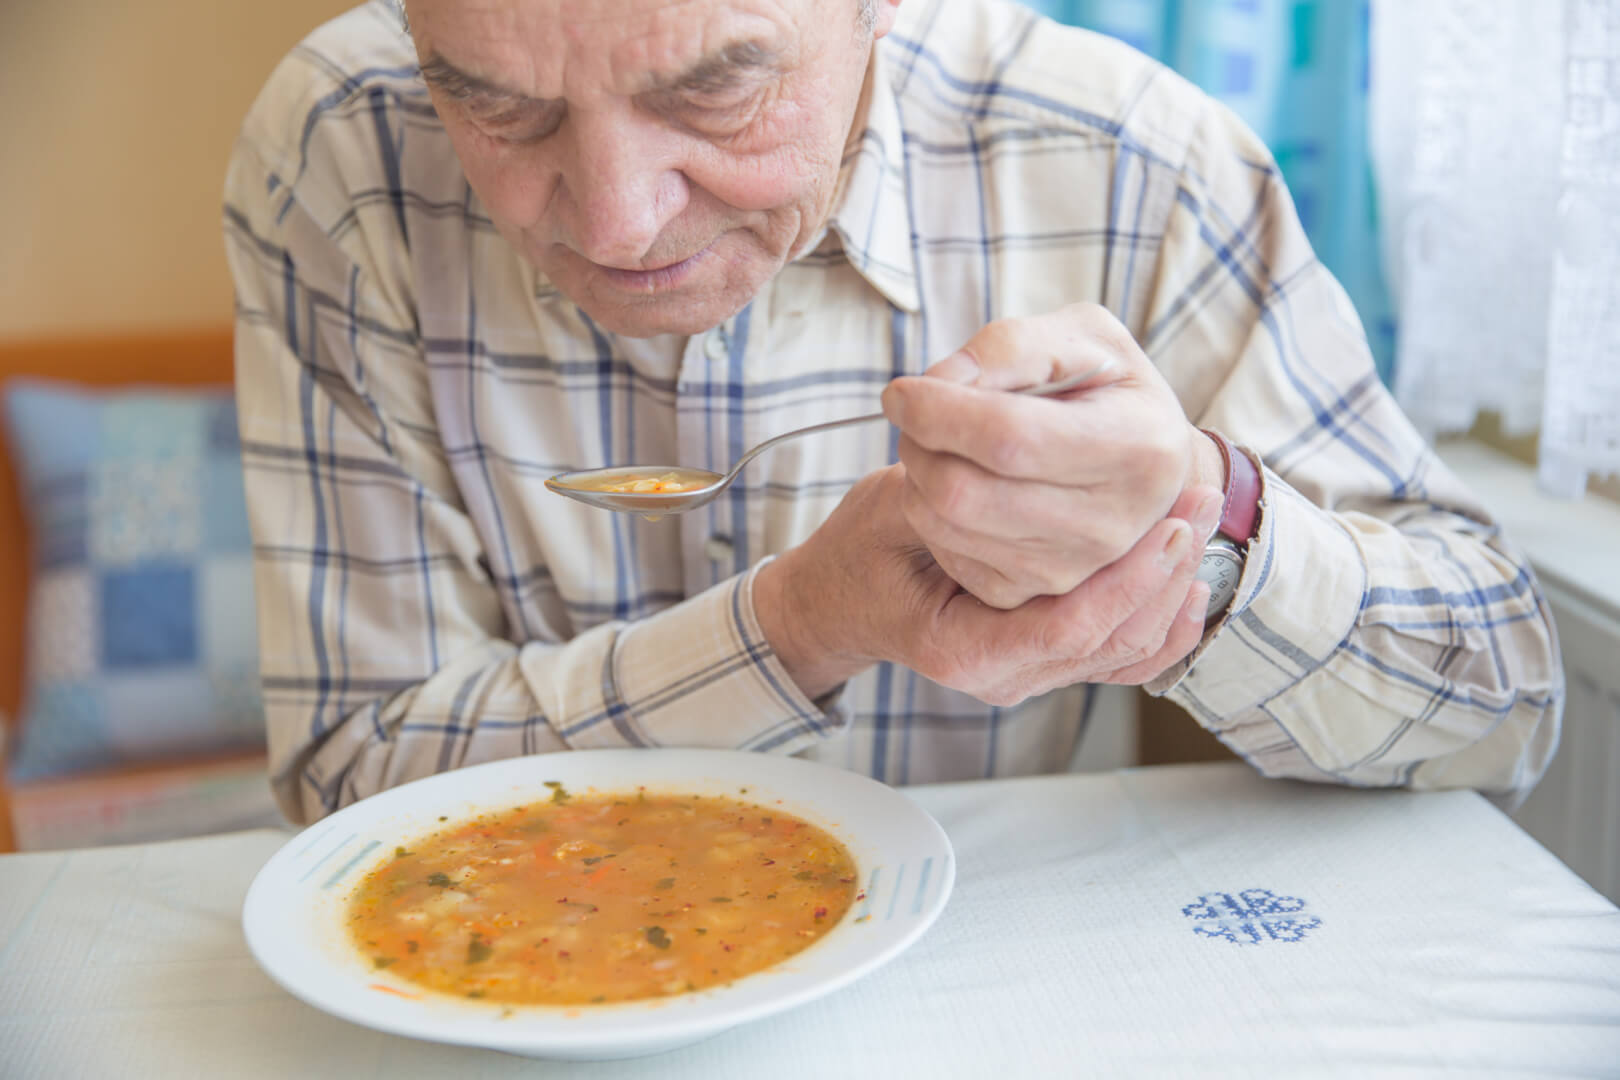 En la imagen aparece un señor mayor que tiene que sujetarse la mano con la otra mano mientras come un plato de sopa por el temblor que le produce el párkinson. 